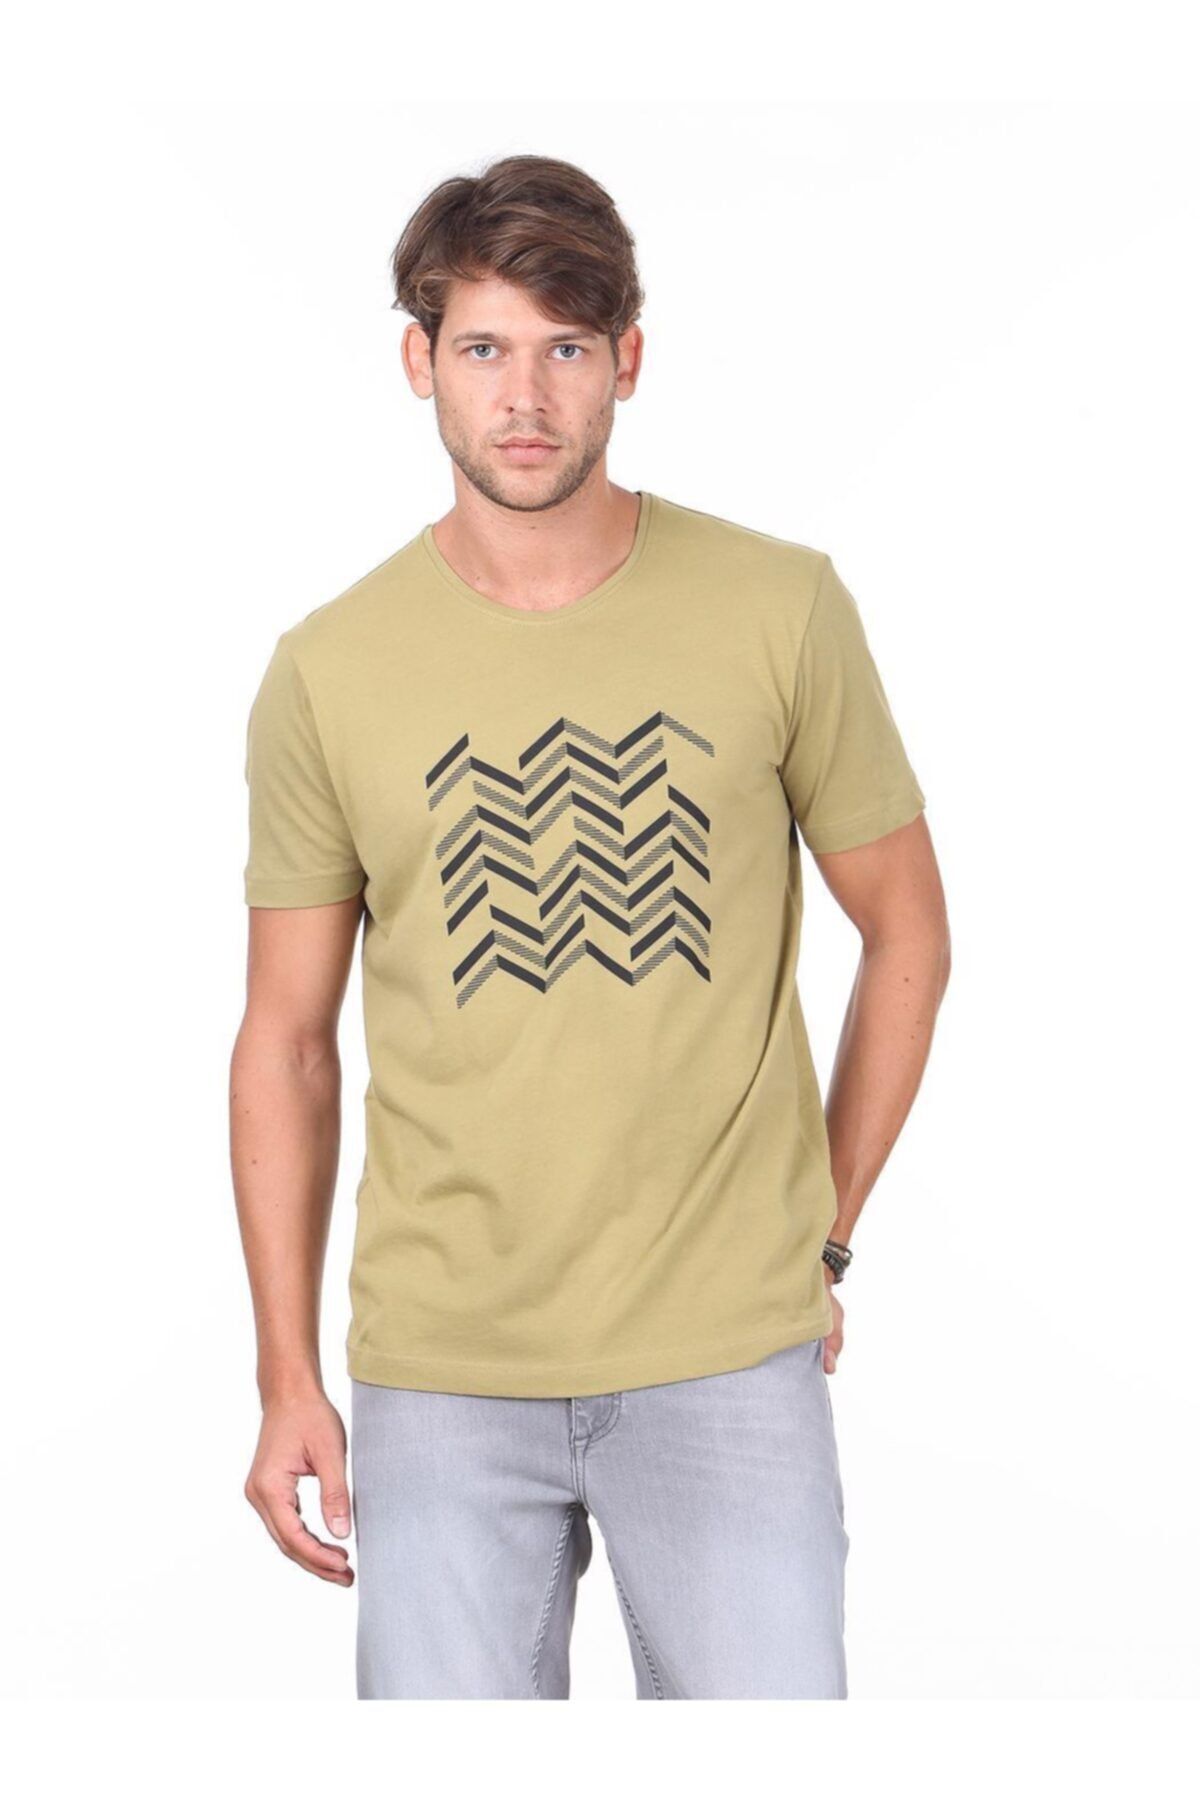 Kip Erkek Yağ Yeşili Baskılı Örme T - Shirt KP10120471